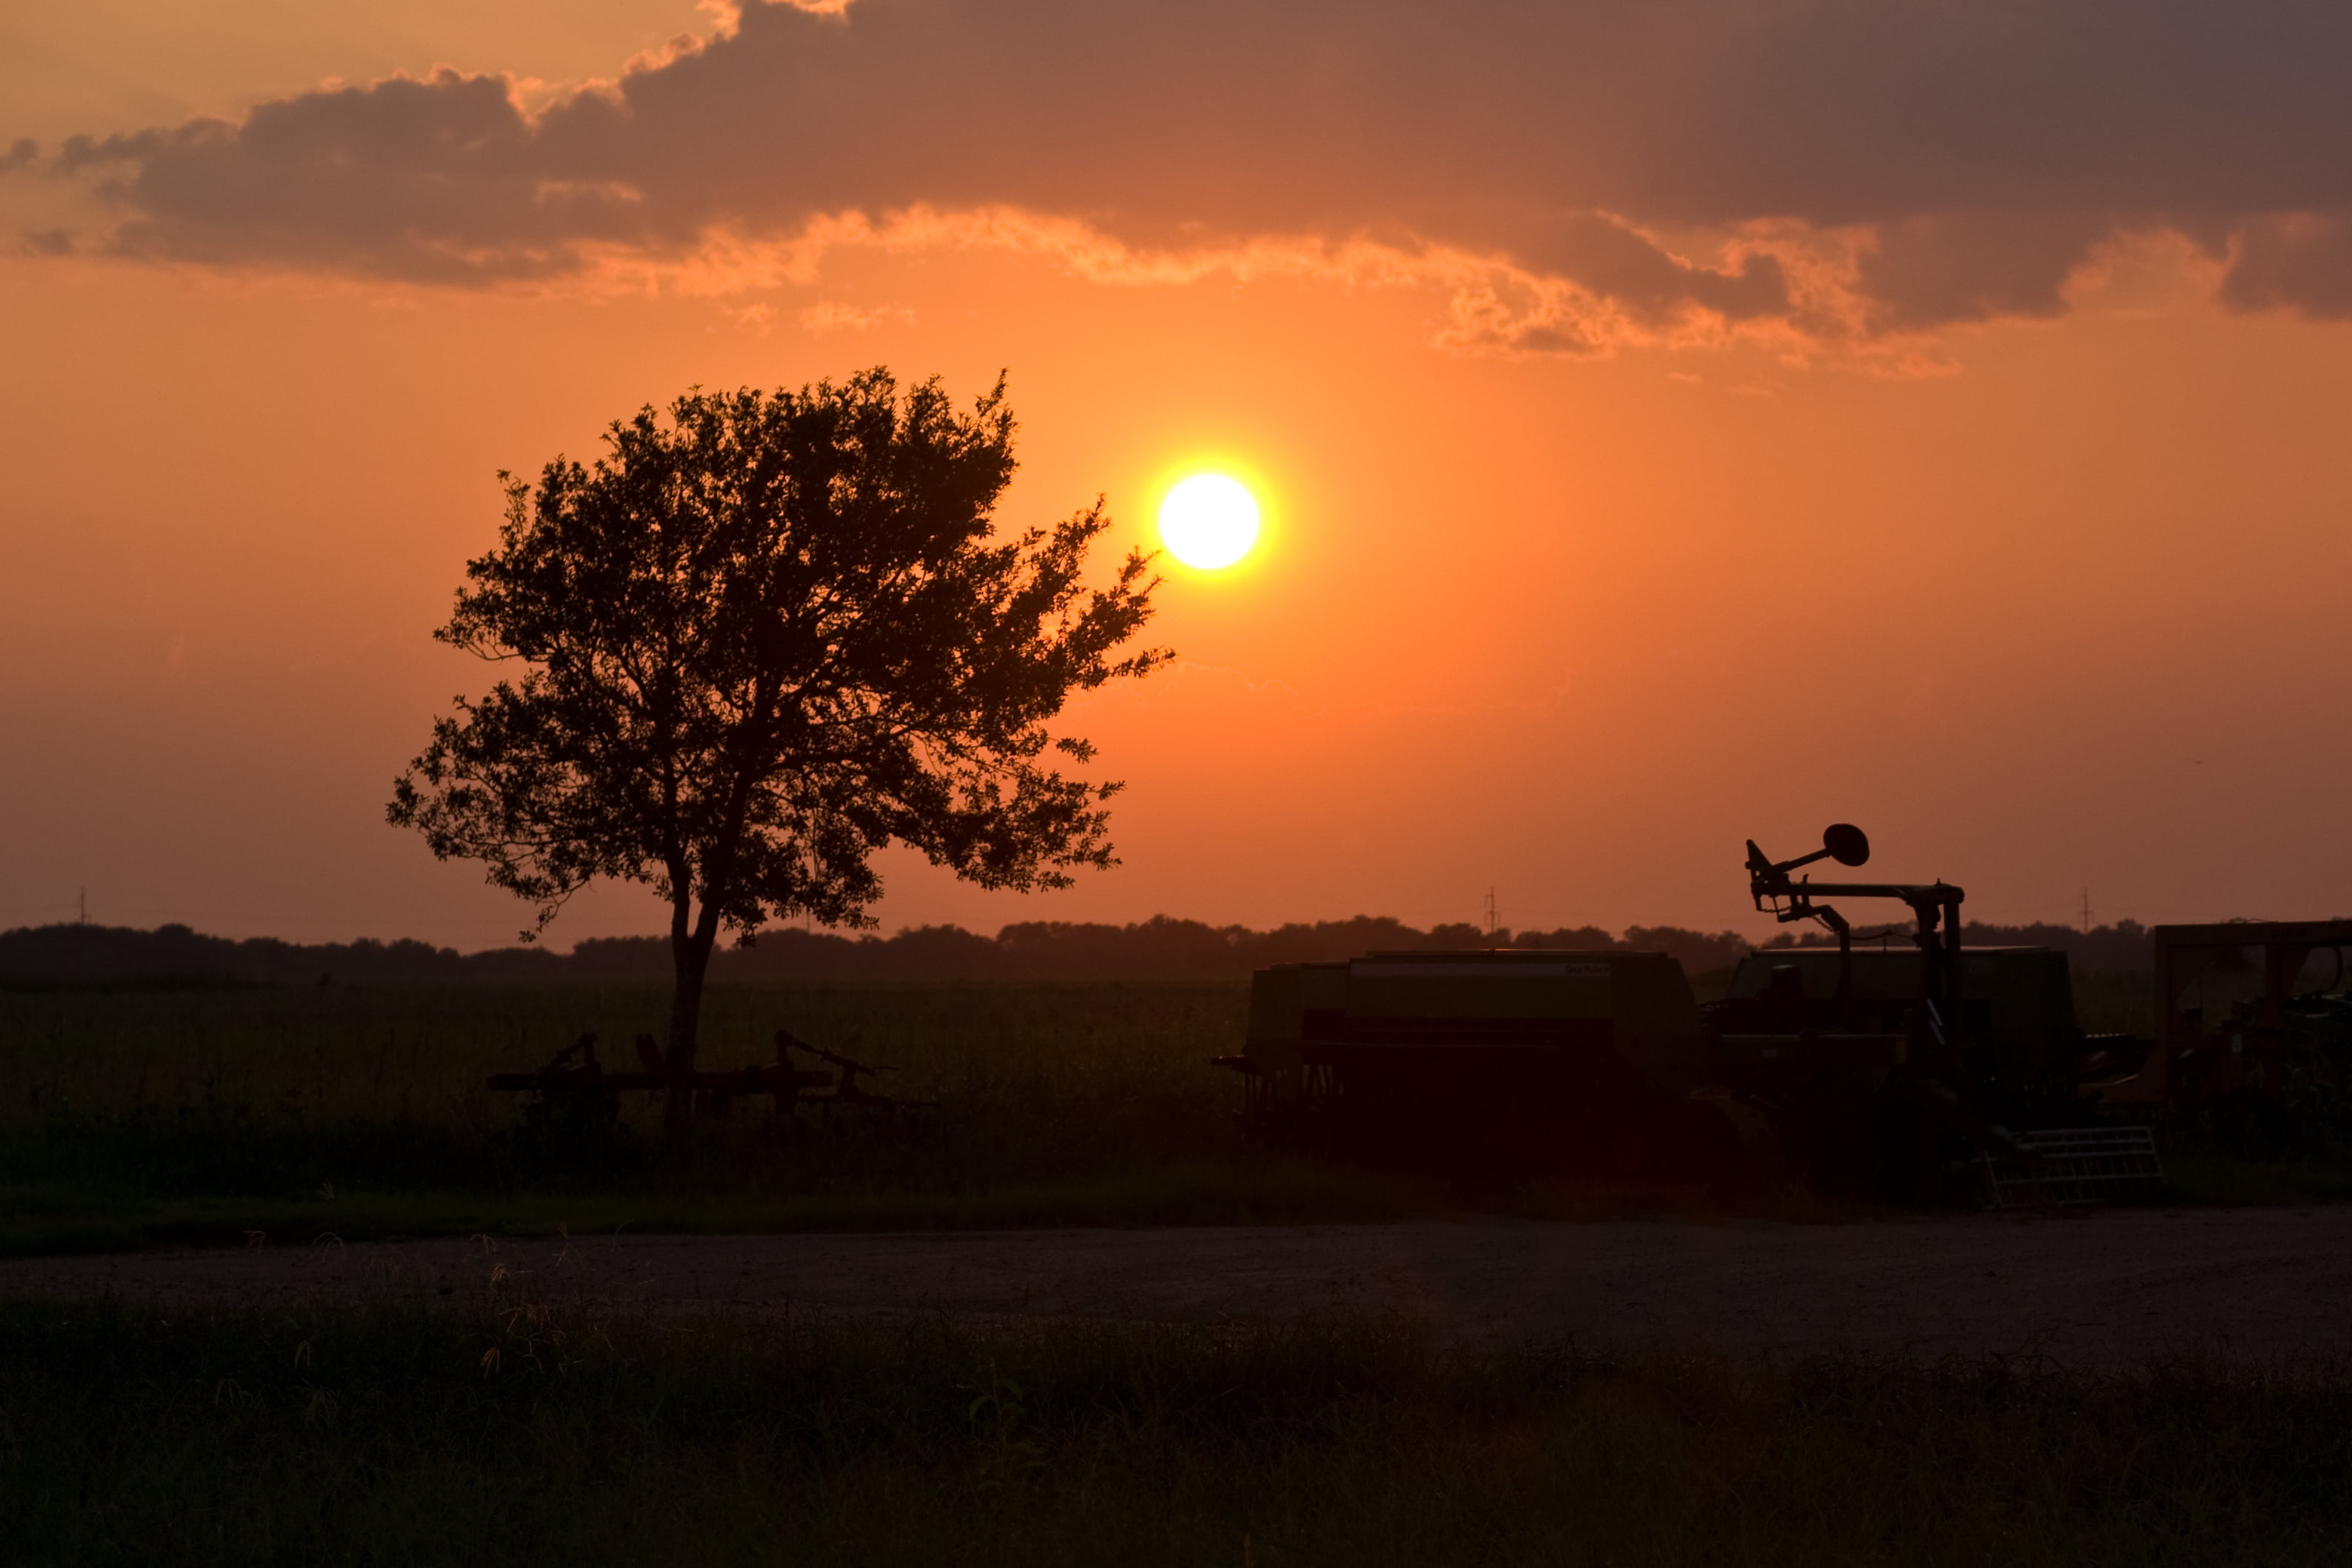 Texas Sunset , HD Wallpaper & Backgrounds